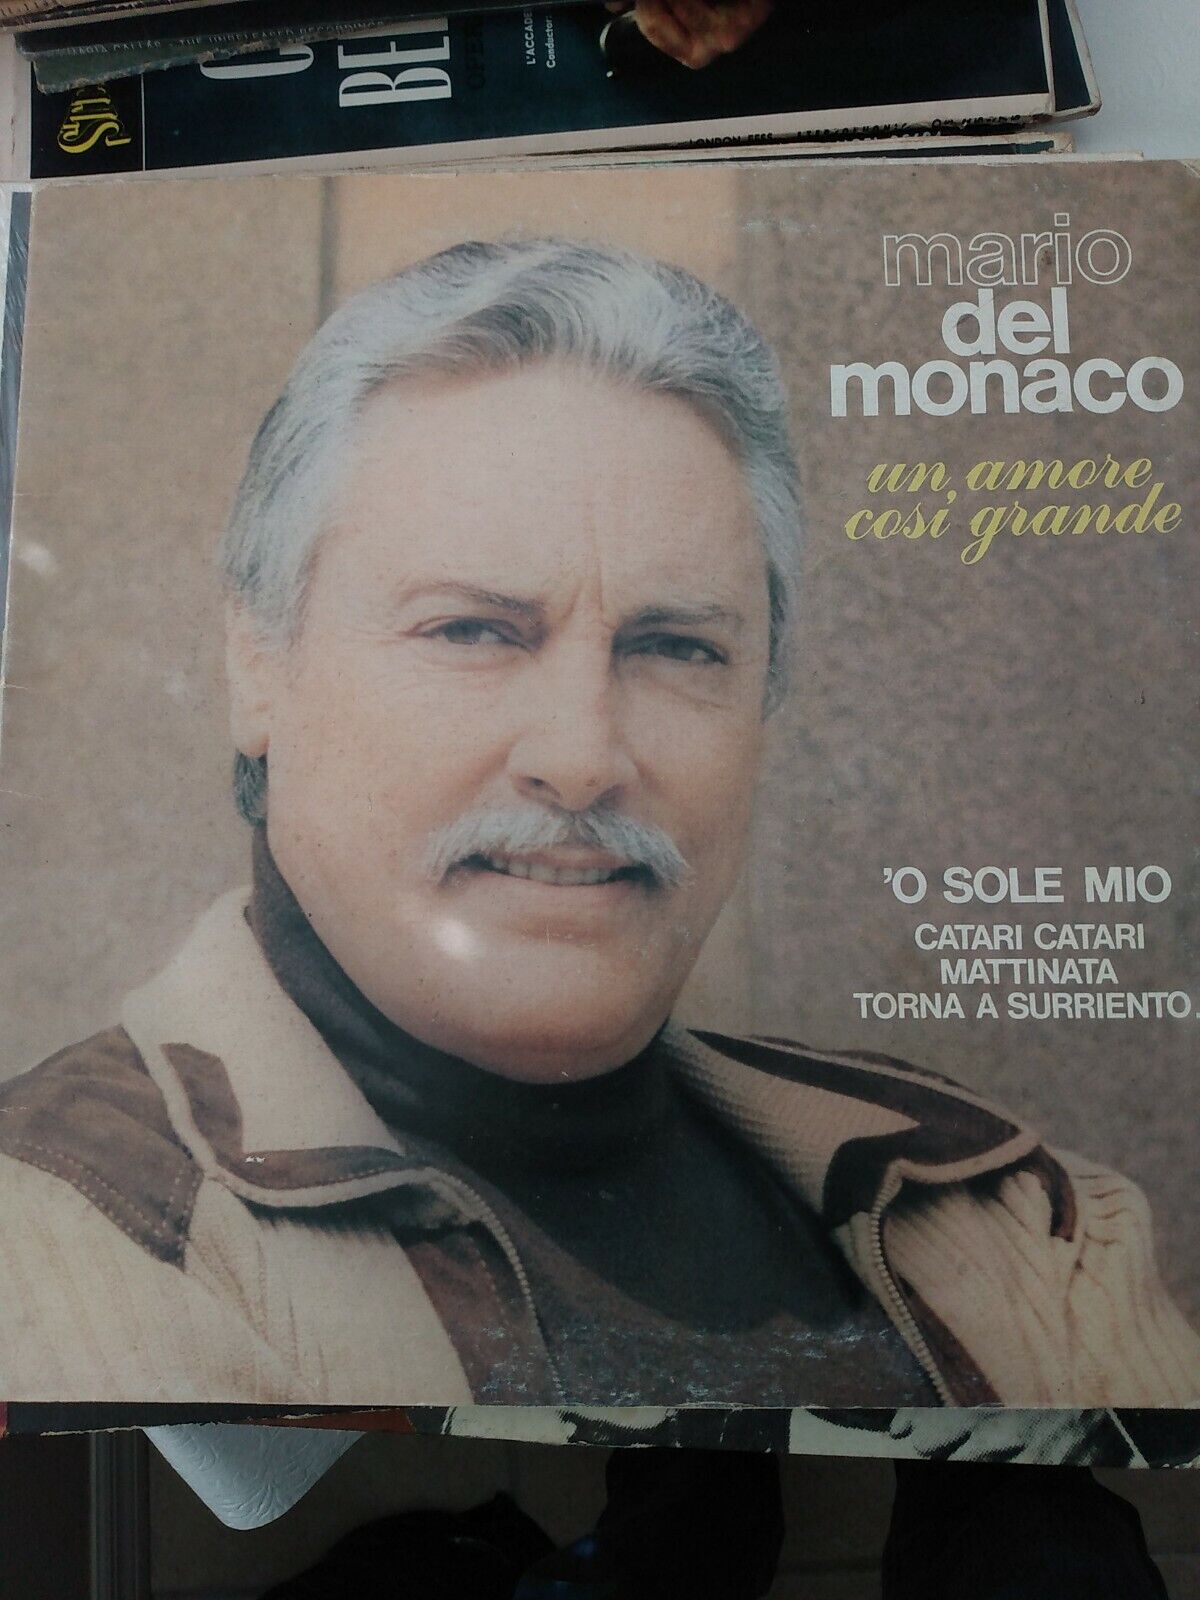 Mario del Monaco – Love LVL 20000: Un amore cosi grande NM/VG+ 